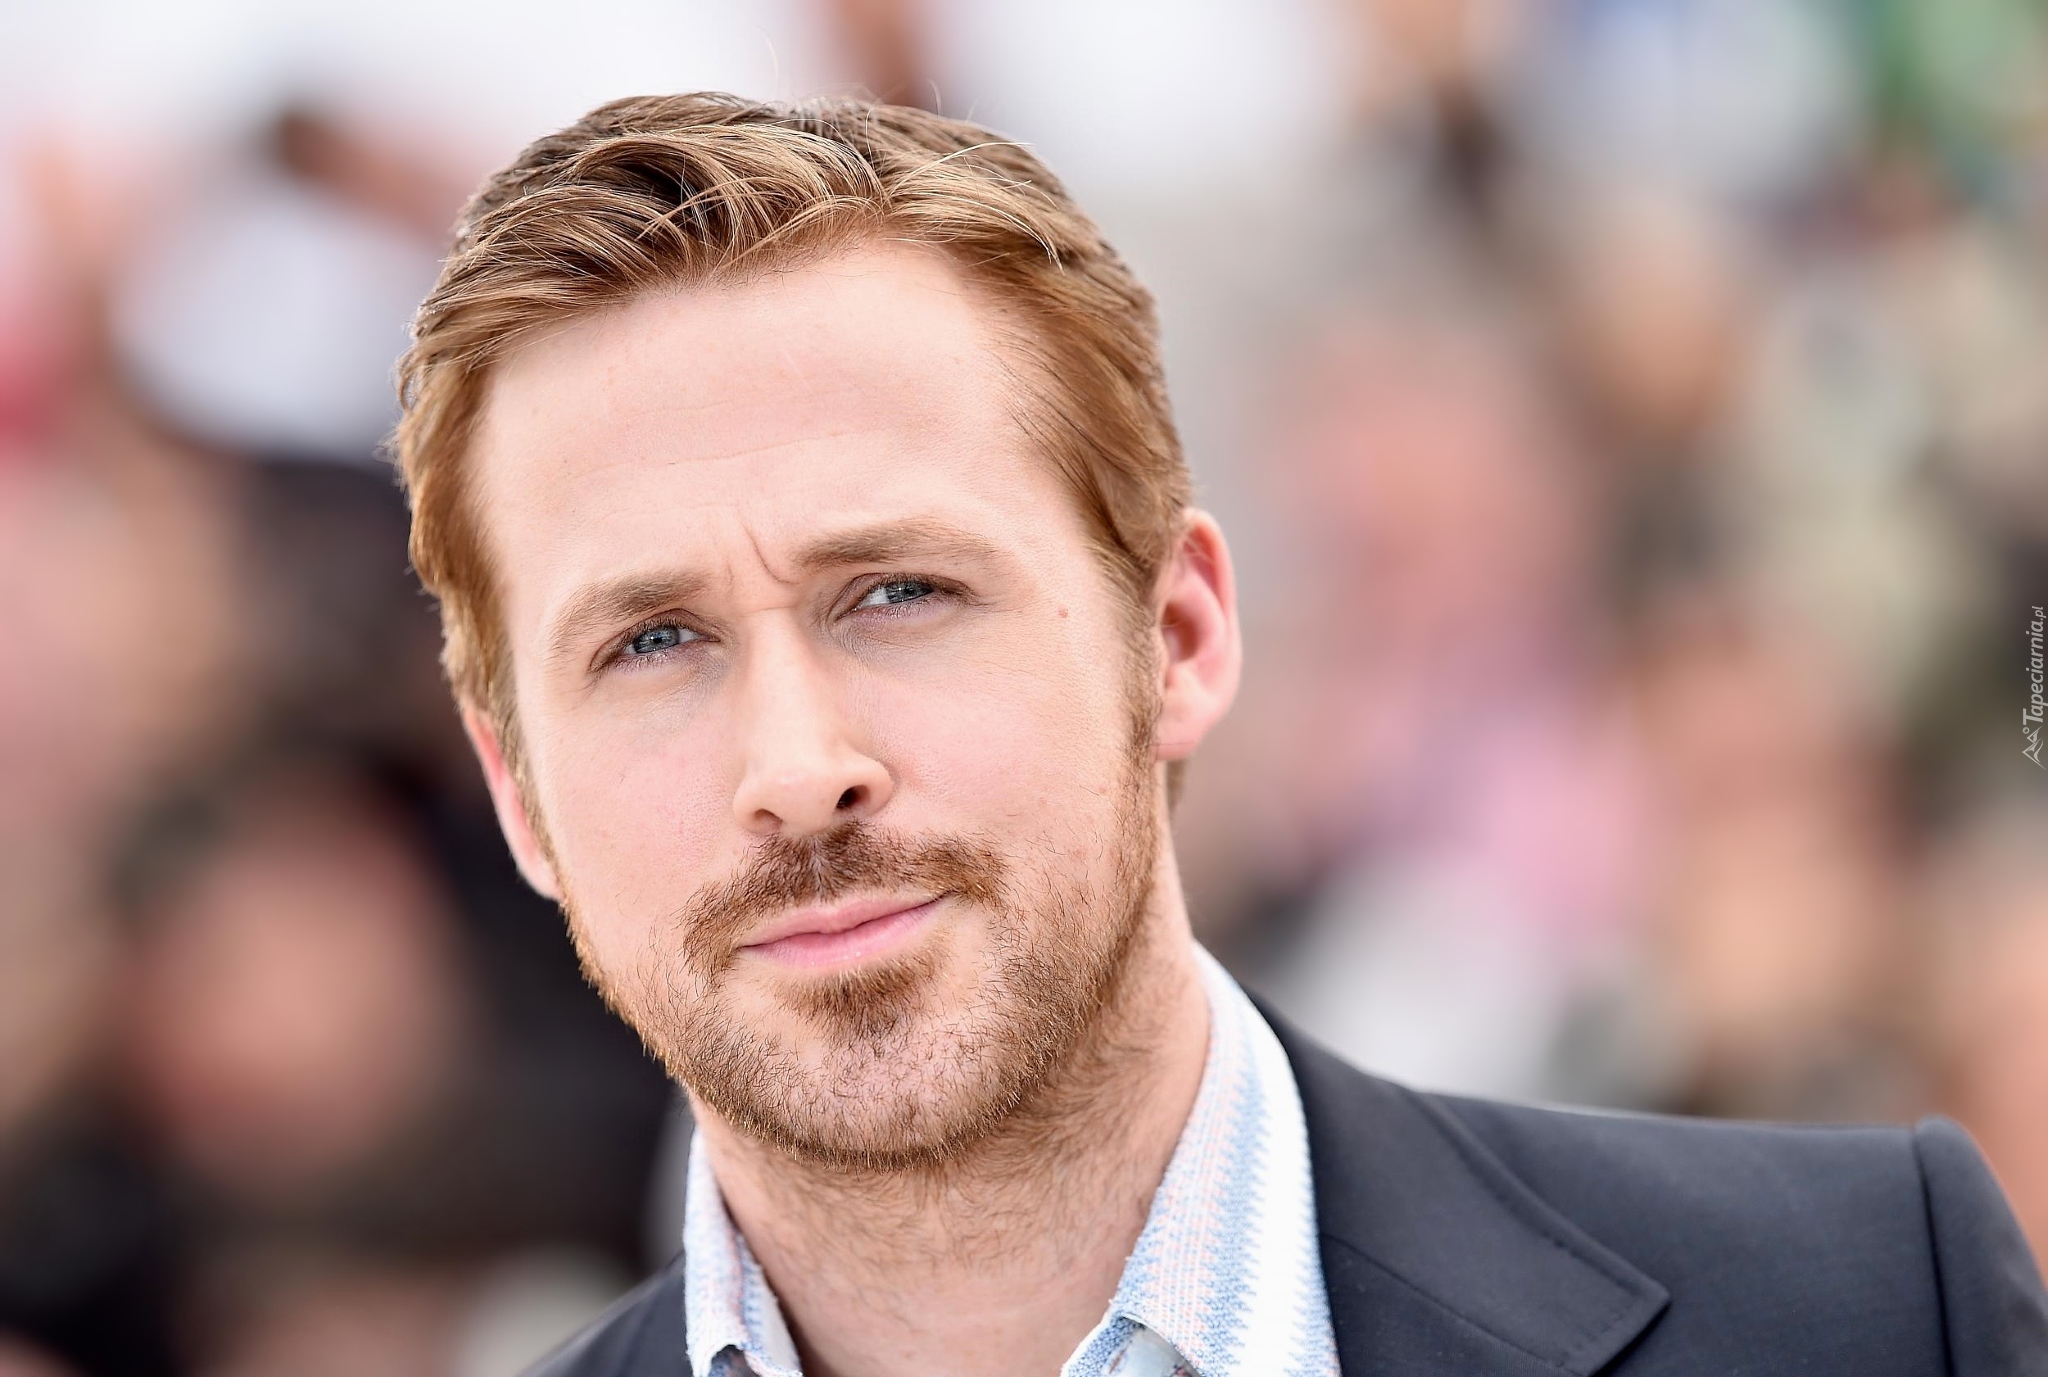 Mężczyzna, Aktor, Ryan Gosling